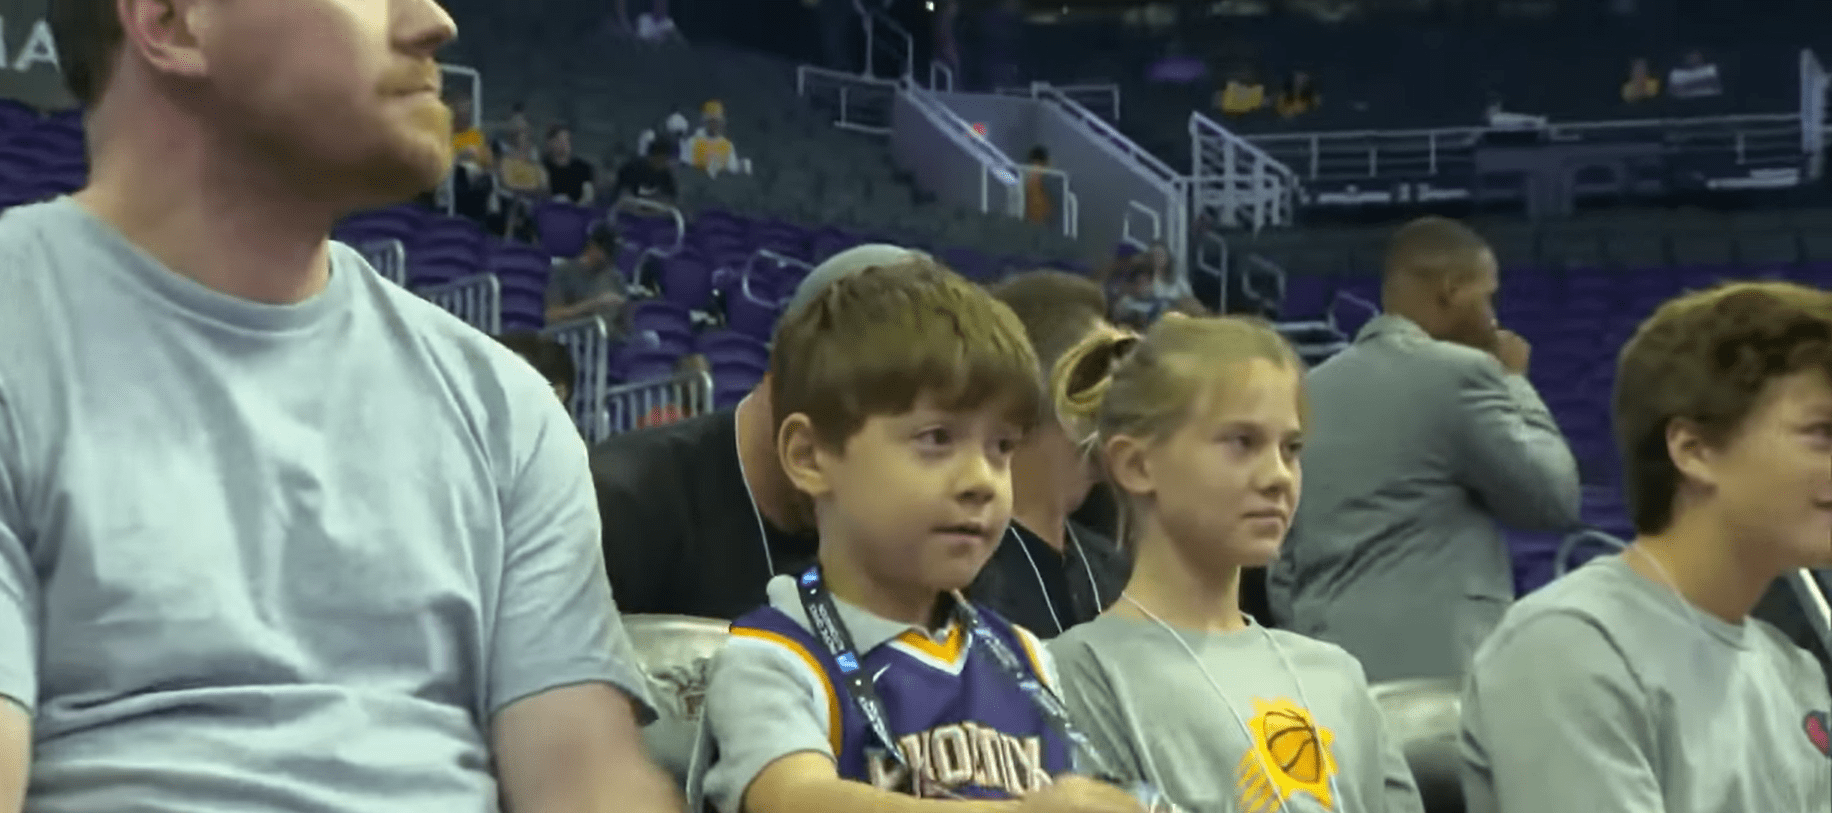 Teddy und sein Vater Ted Bollinger sehen sich ein Basketballspiel bei den Phoenix Suns NBA an. | Quelle: Youtube.com/Inside Edition